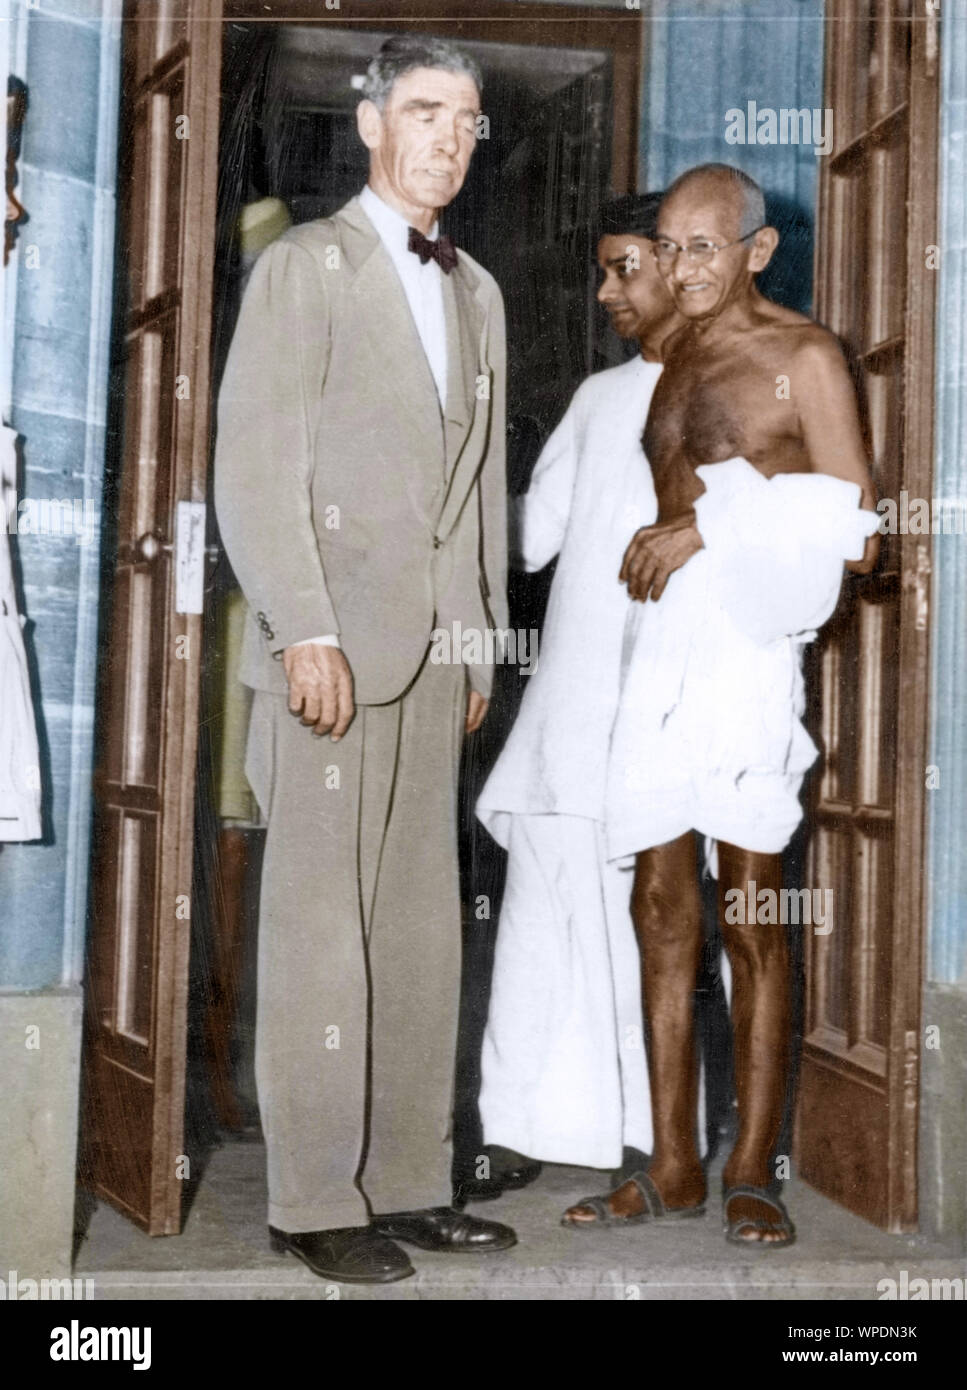 Mahatma Gandhi Le Lieutenant-colonel de M S Fraser après discussion, Delhi, Inde, Asie, 3 avril 1946 Banque D'Images